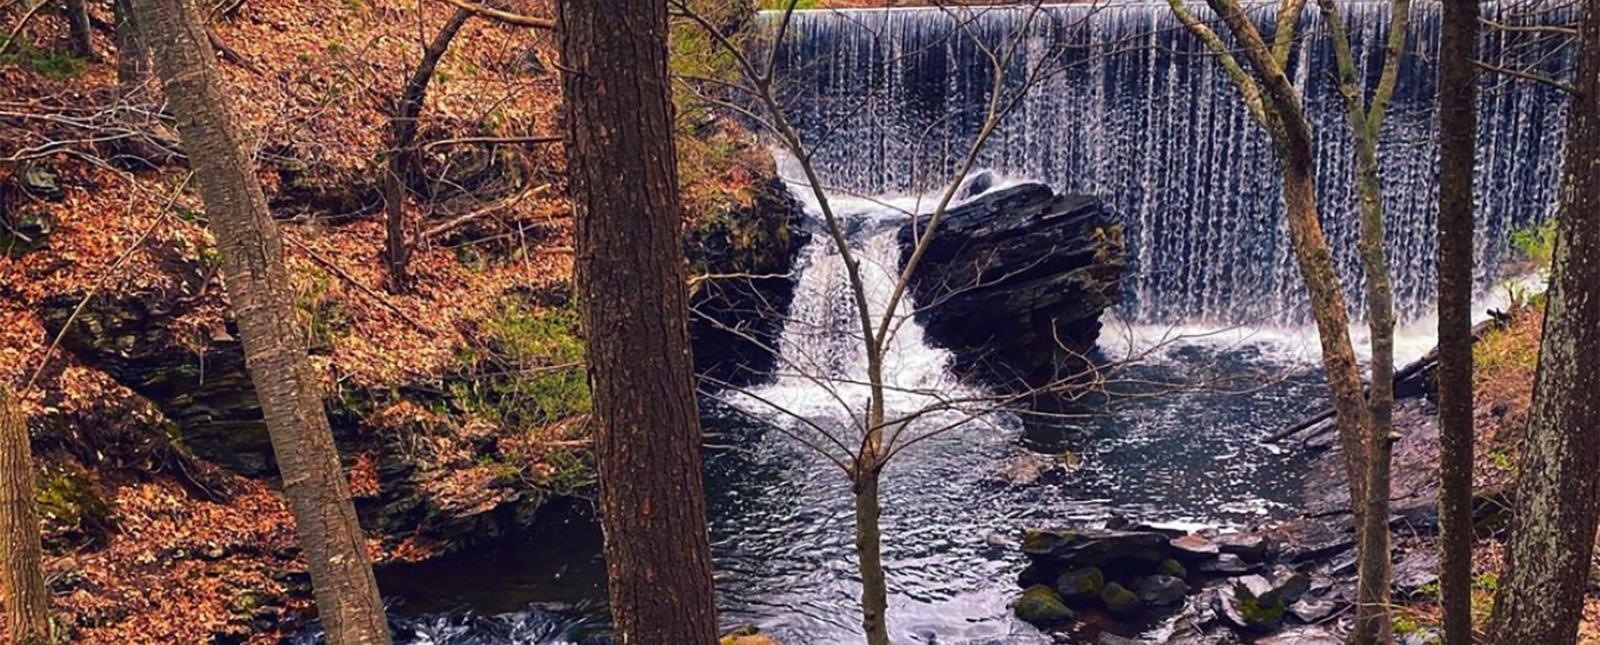 Una cascada en el bosque cerca de un puente (Instagram@deppinlove)